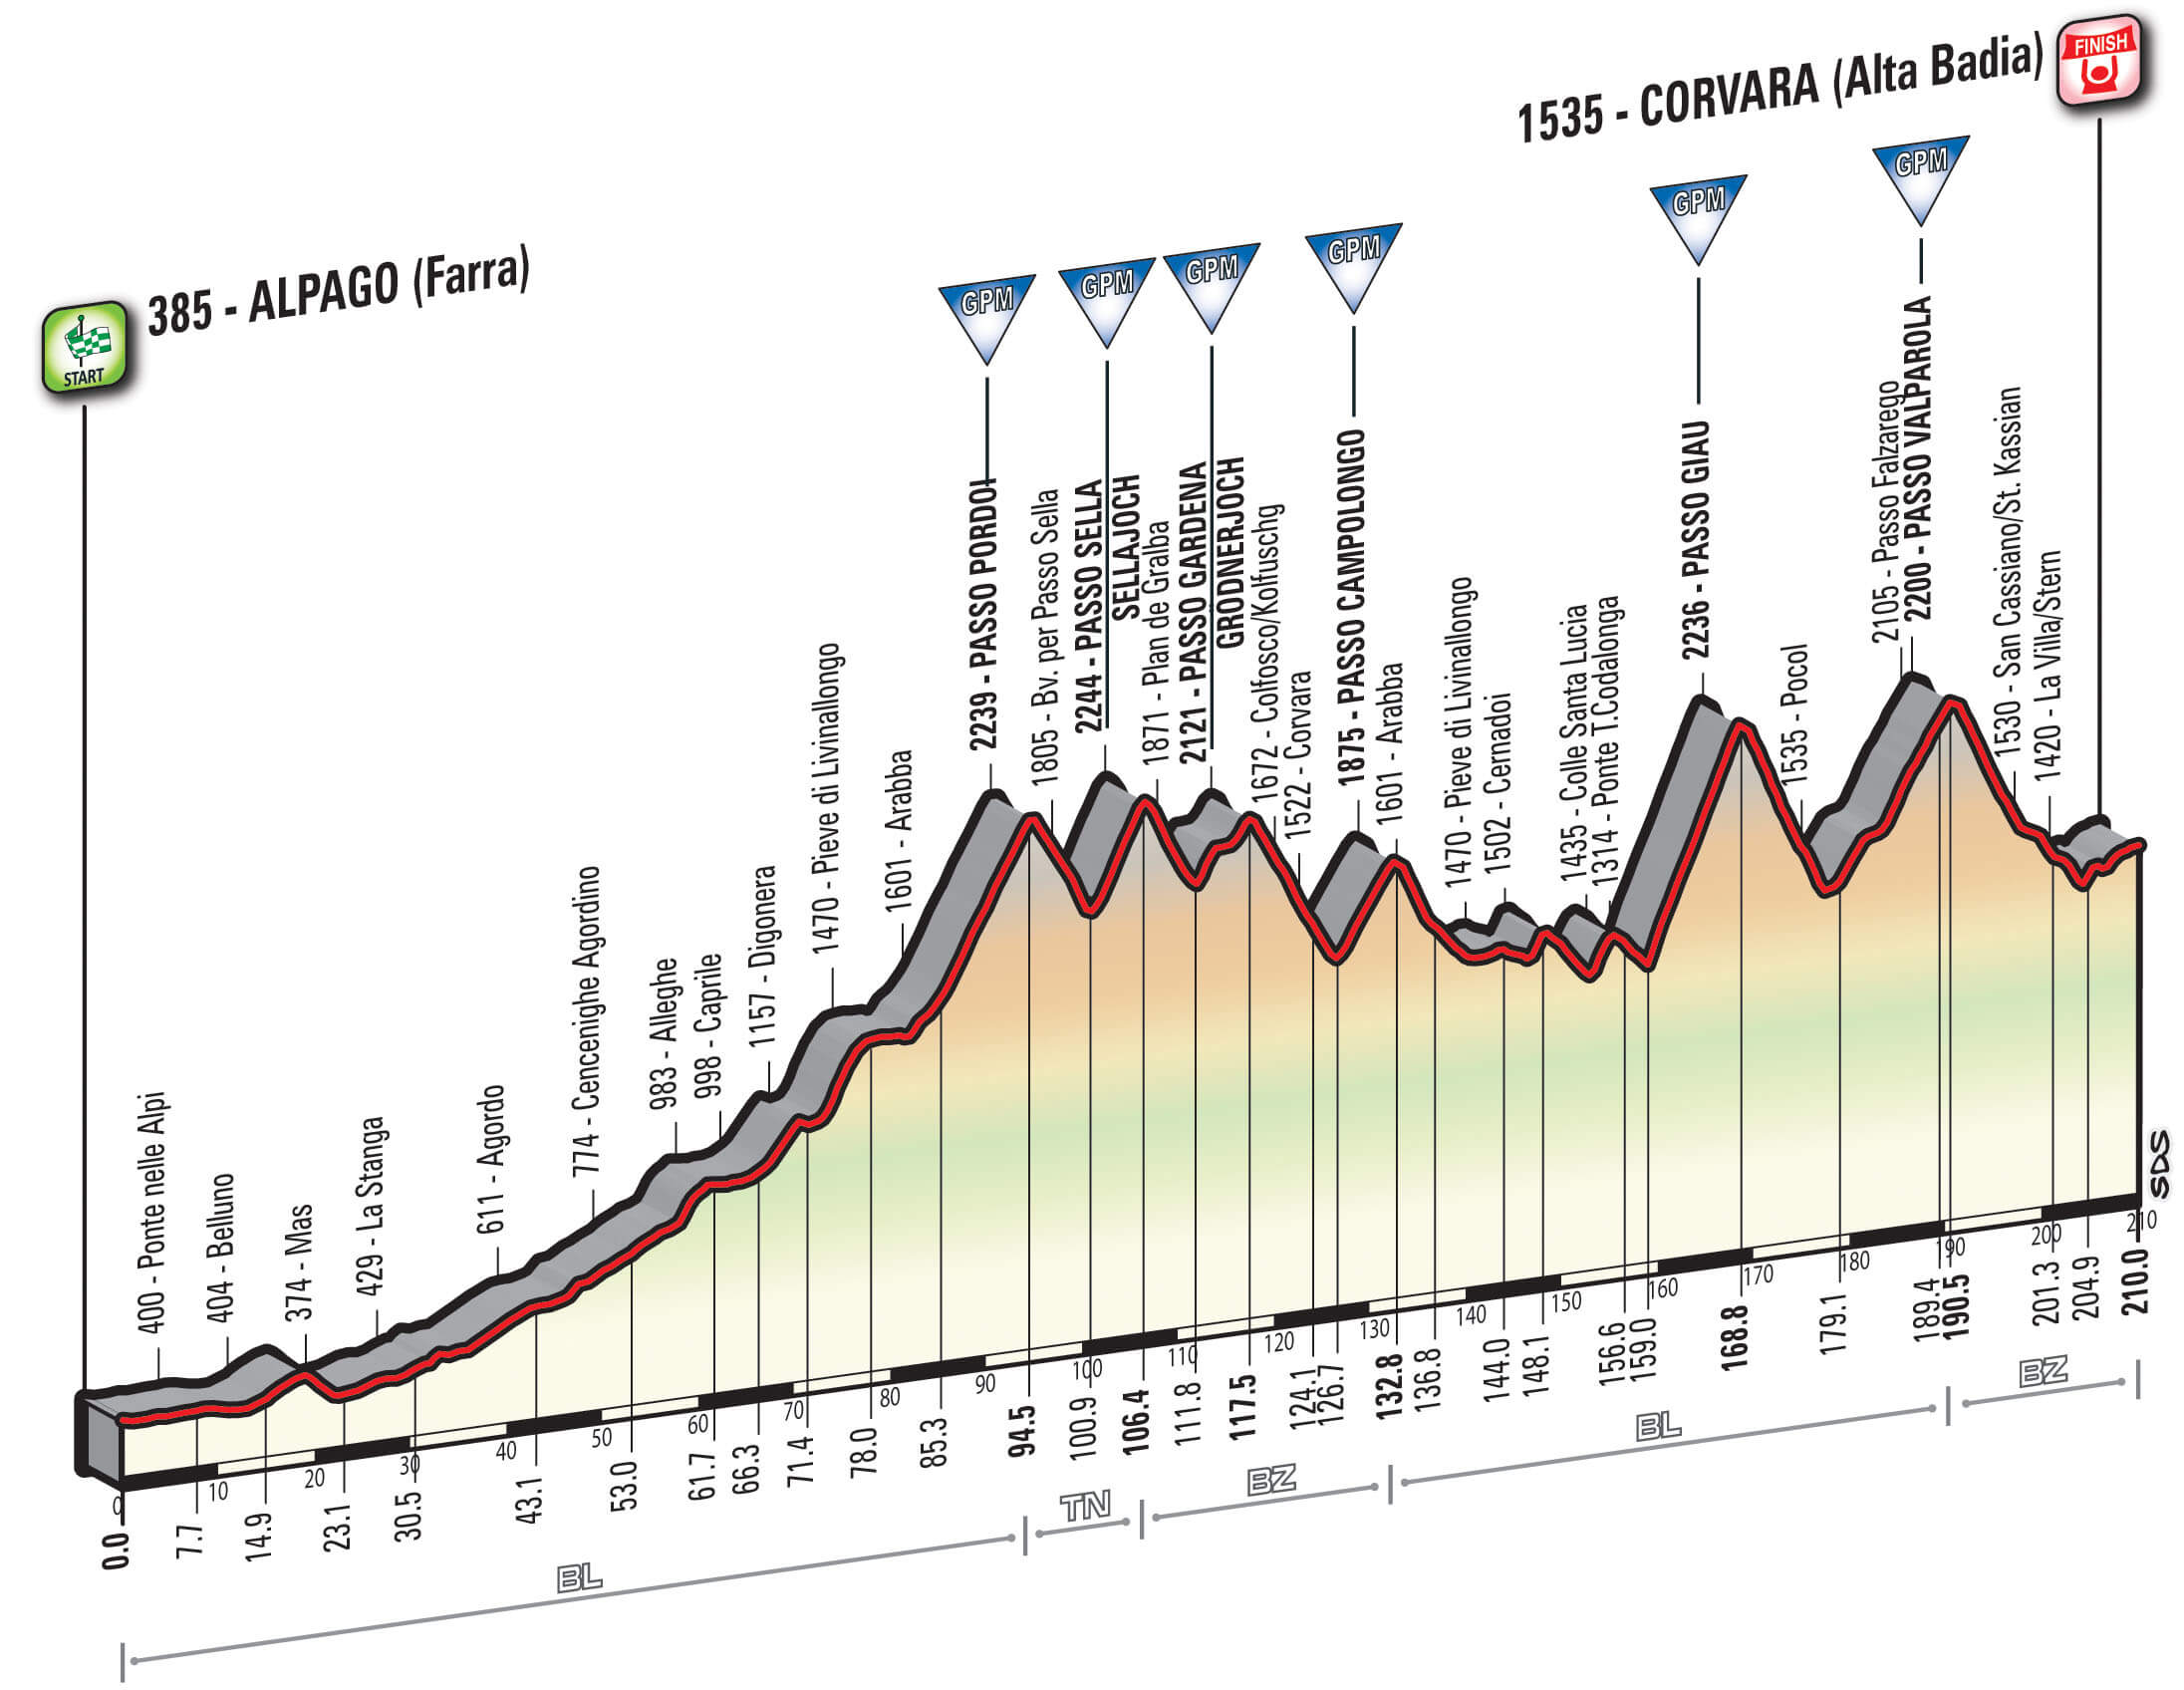 Giro d'Italia dislivello e tappa a Corvara